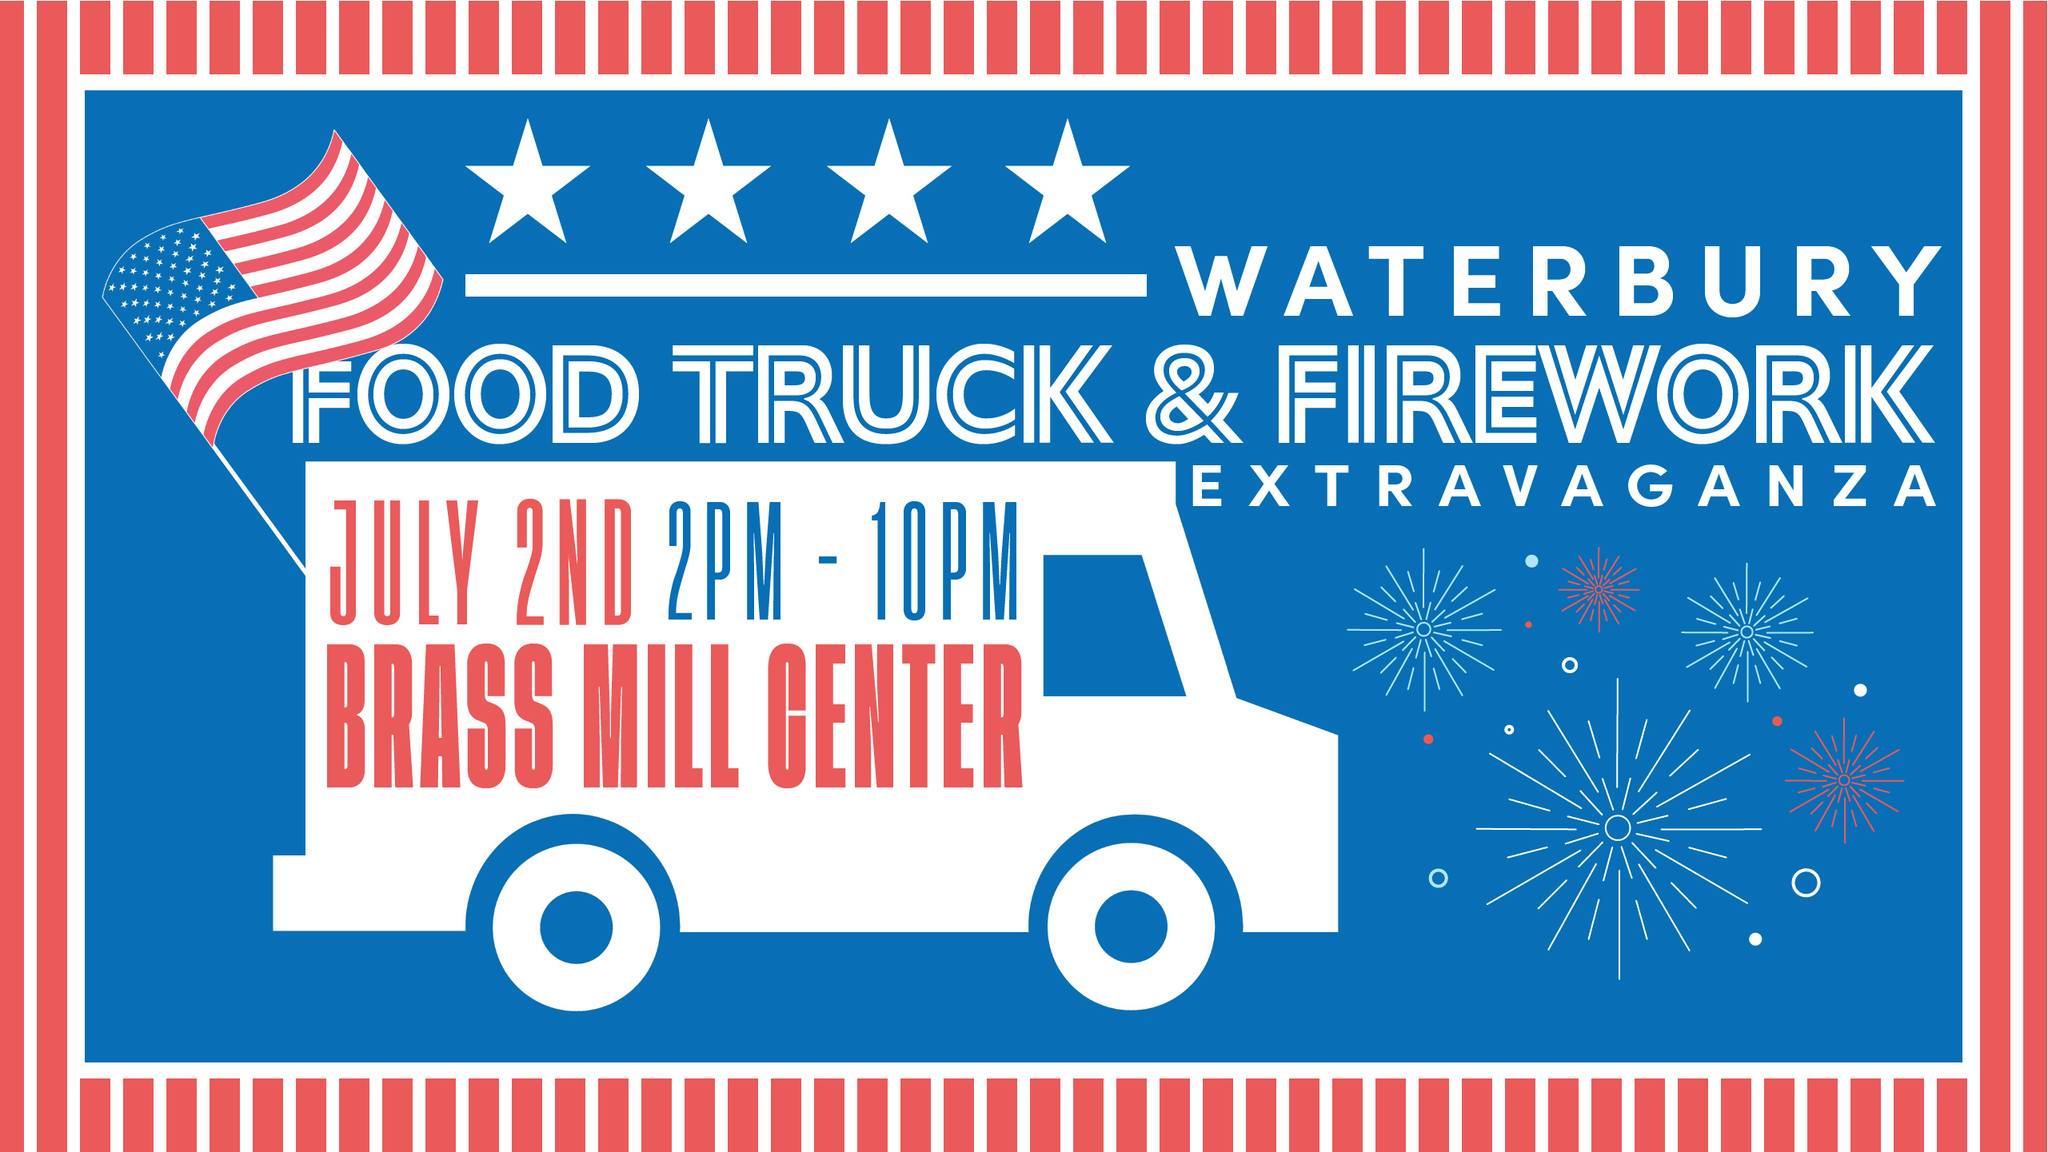 Waterbury Food Truck & Firework Extravaganza at Brass Mill Center